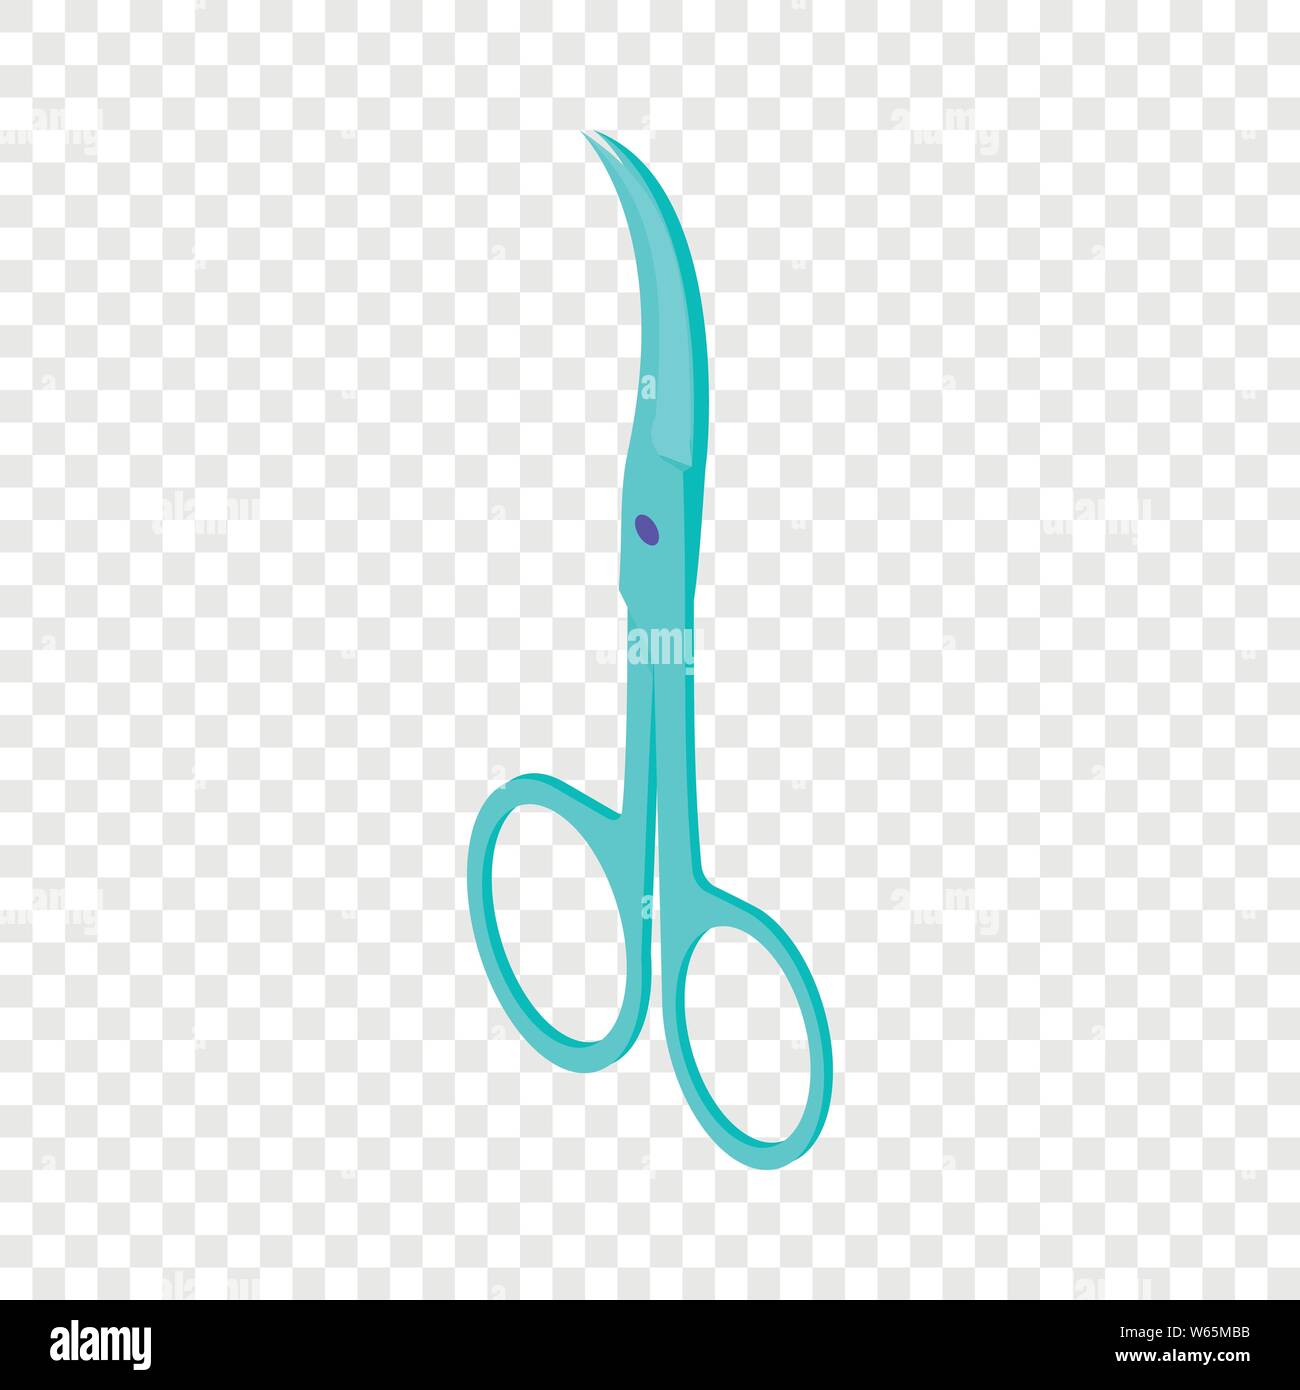 Scissors icon, isometric 3d style Stock Vector